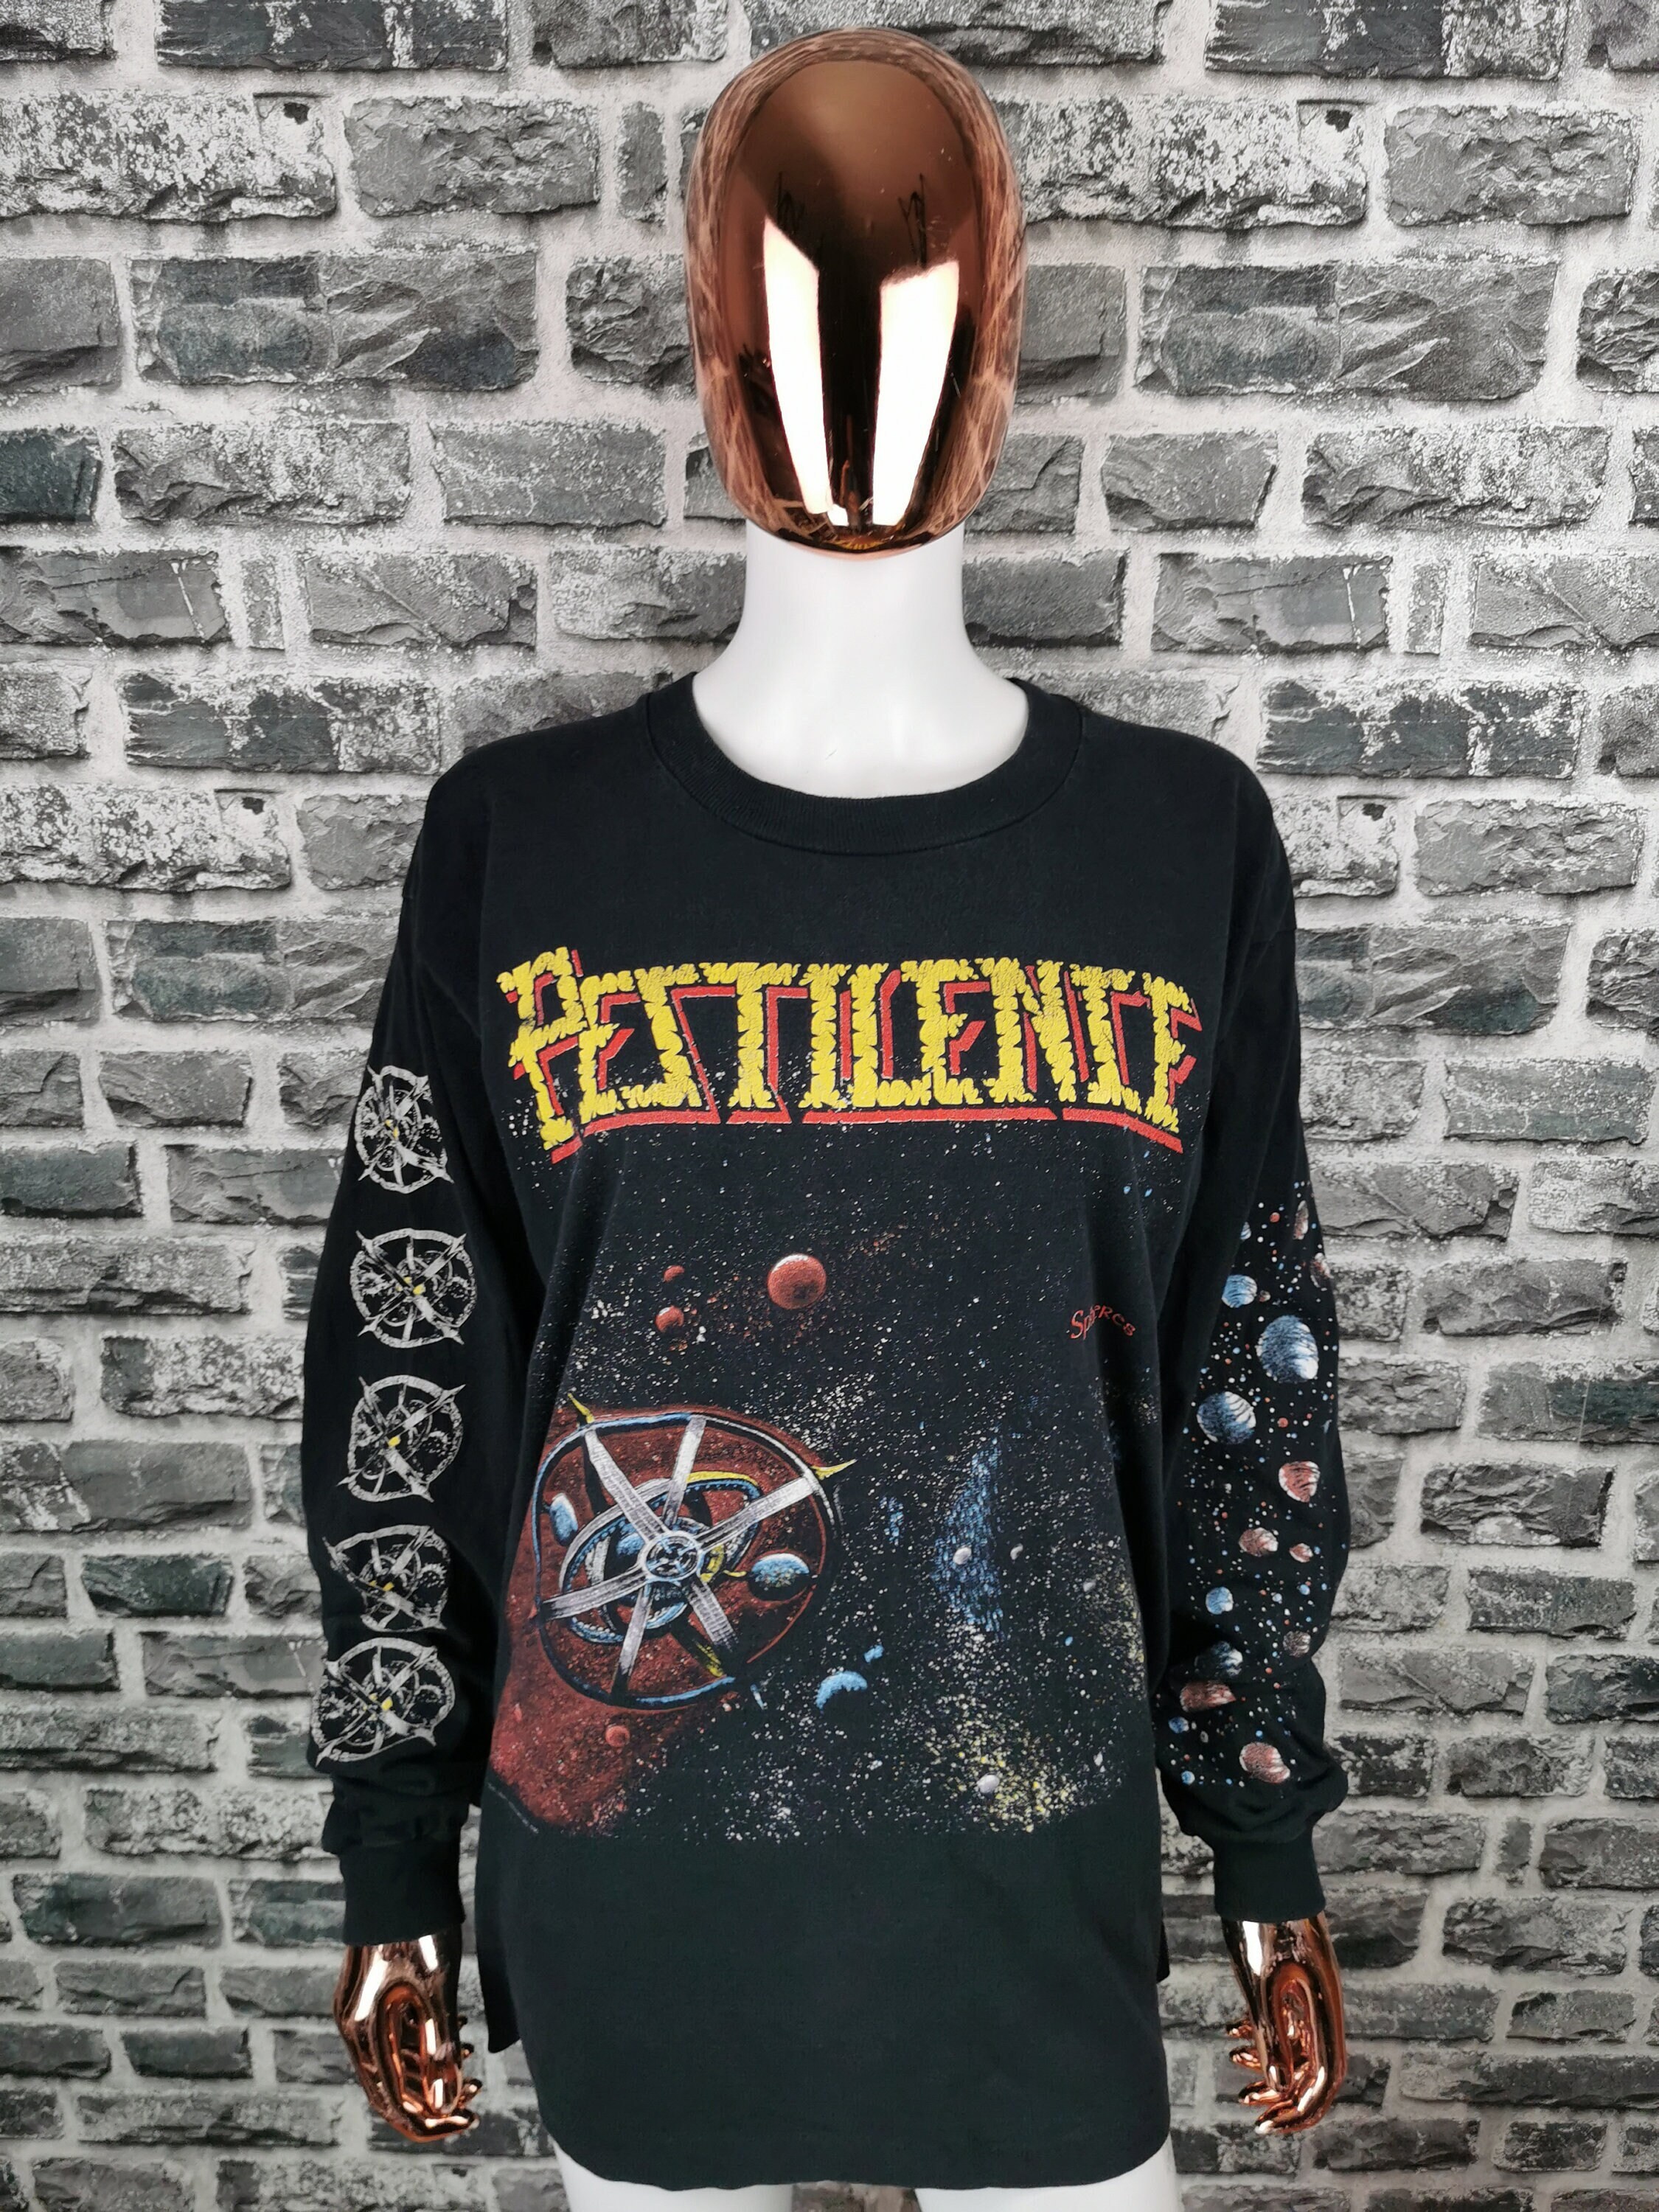 NEW & OFFICIAL! T-Shirt Pestilence 'Spheres' Black